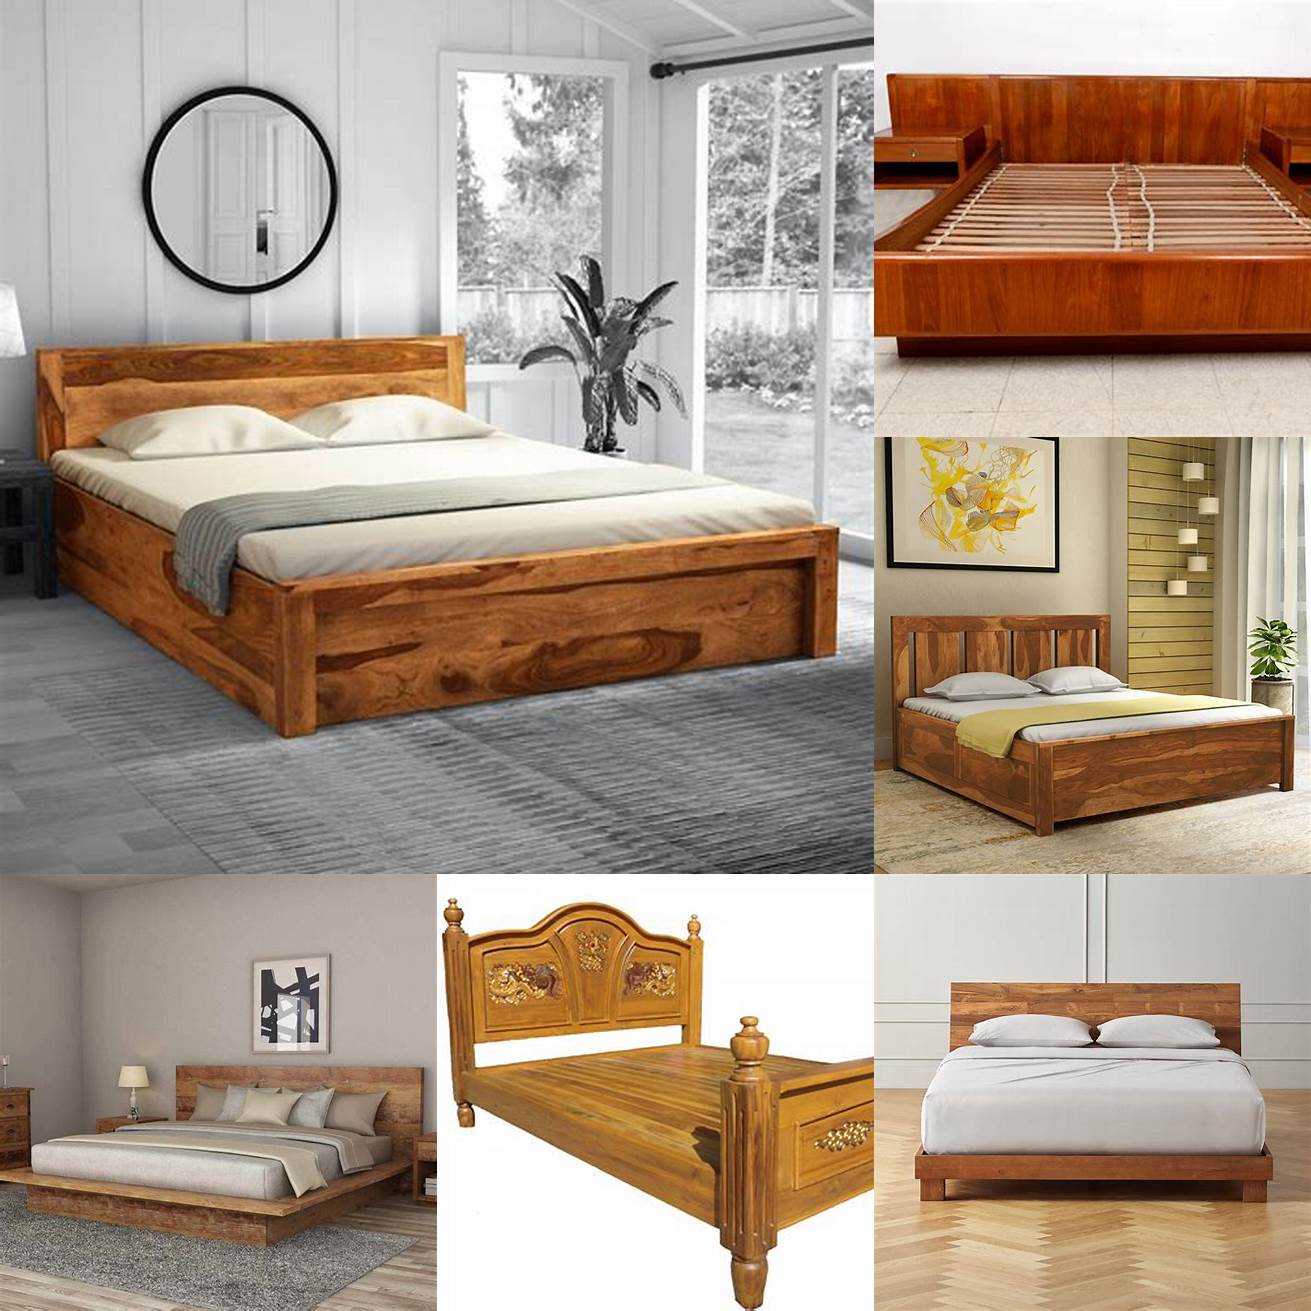 A teak wood bed frame